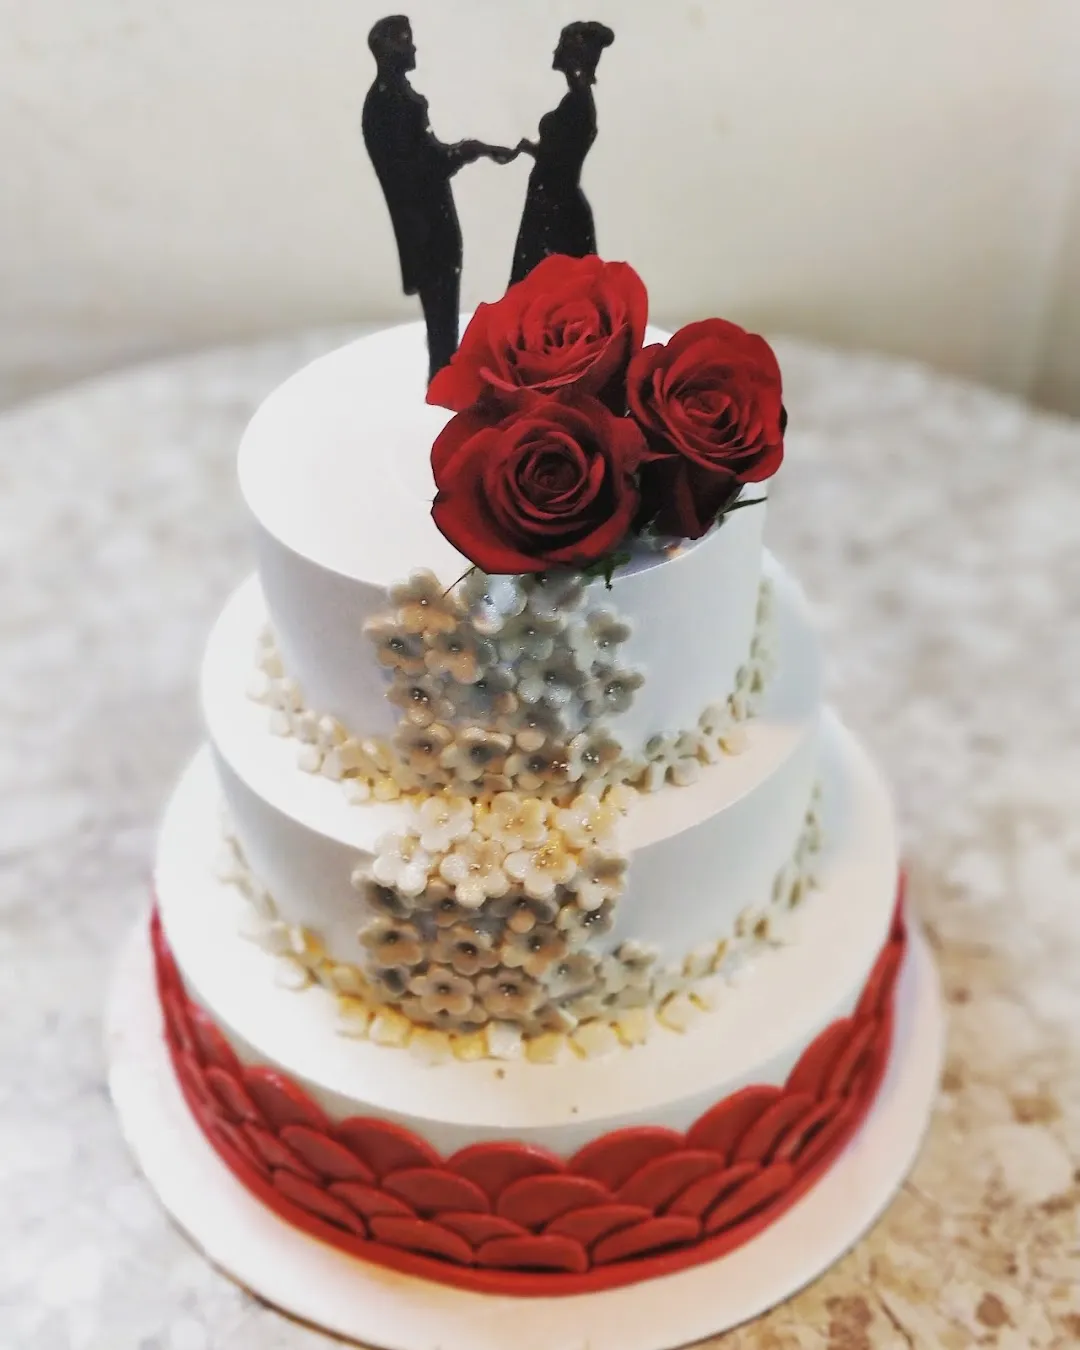 Photo Cake Recipe at Home | Wedding Anniversary Photo Cake | Wedding  Anniversary Decoration Idea - YouTube